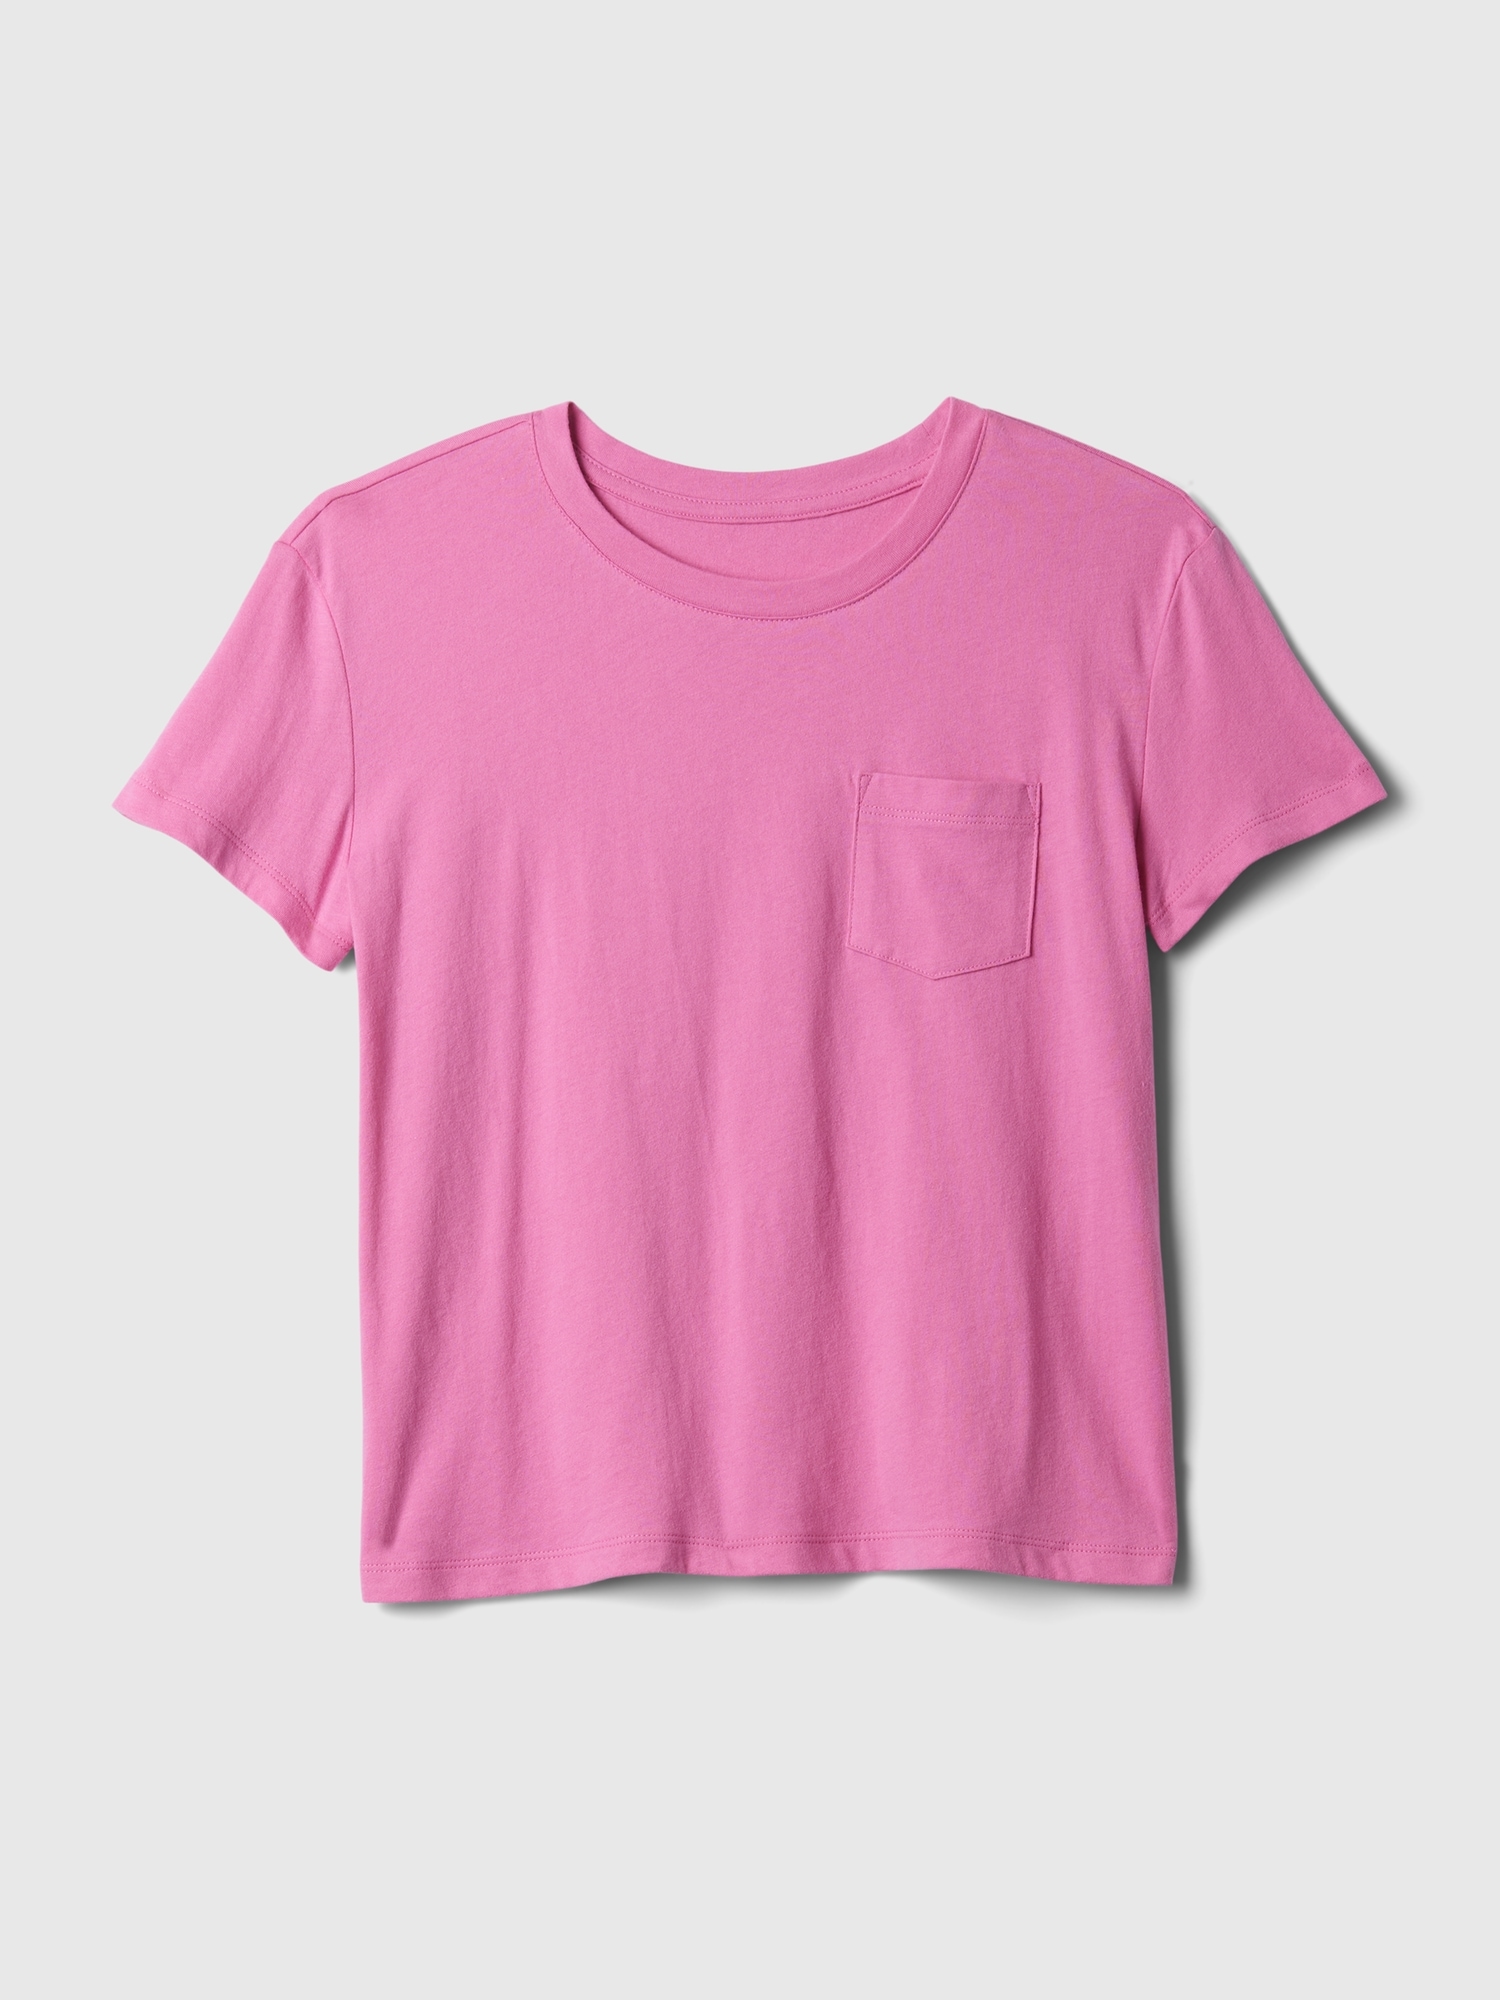 Kids Vintage T-Shirt | Gap